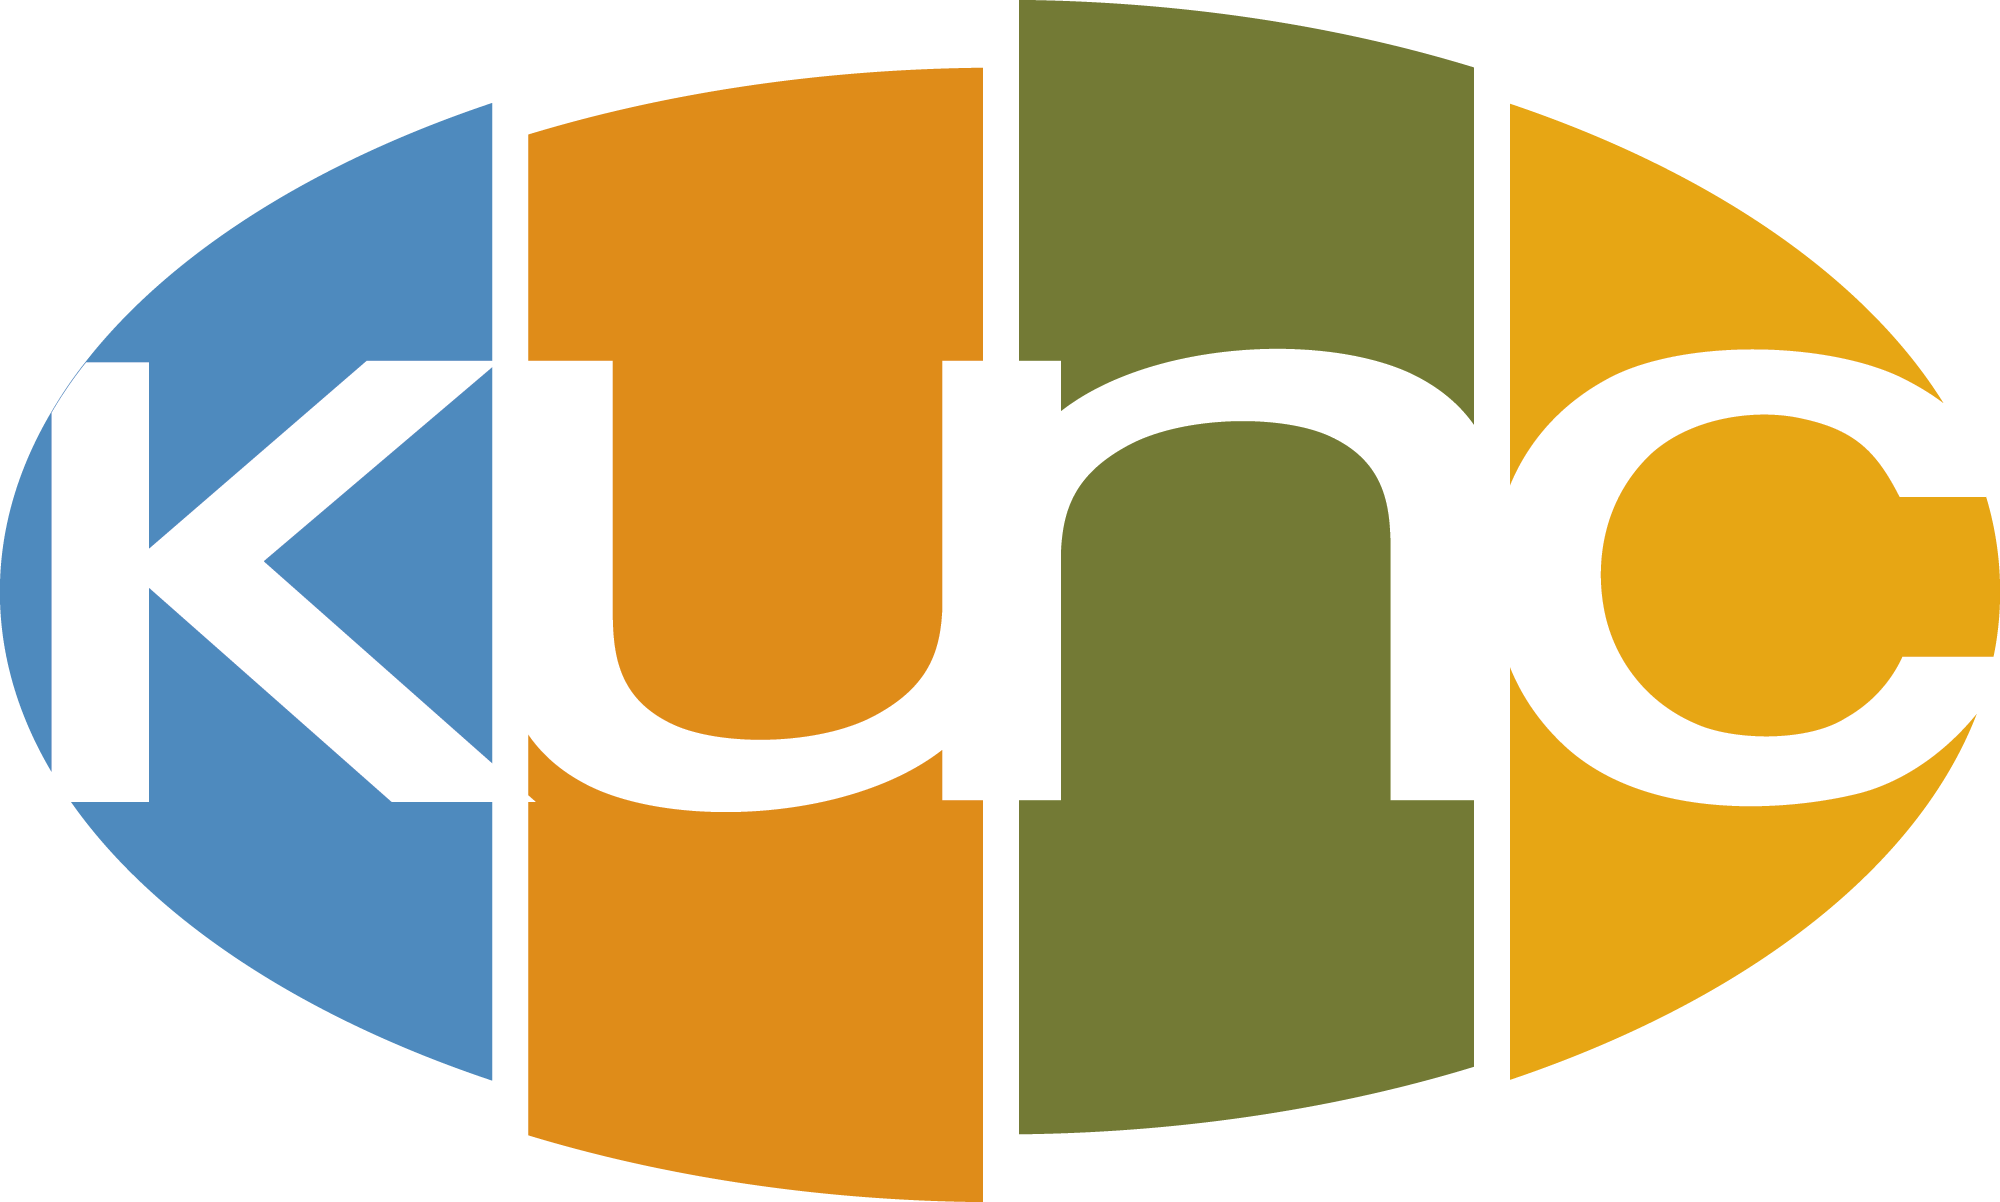 kunc logo official use large